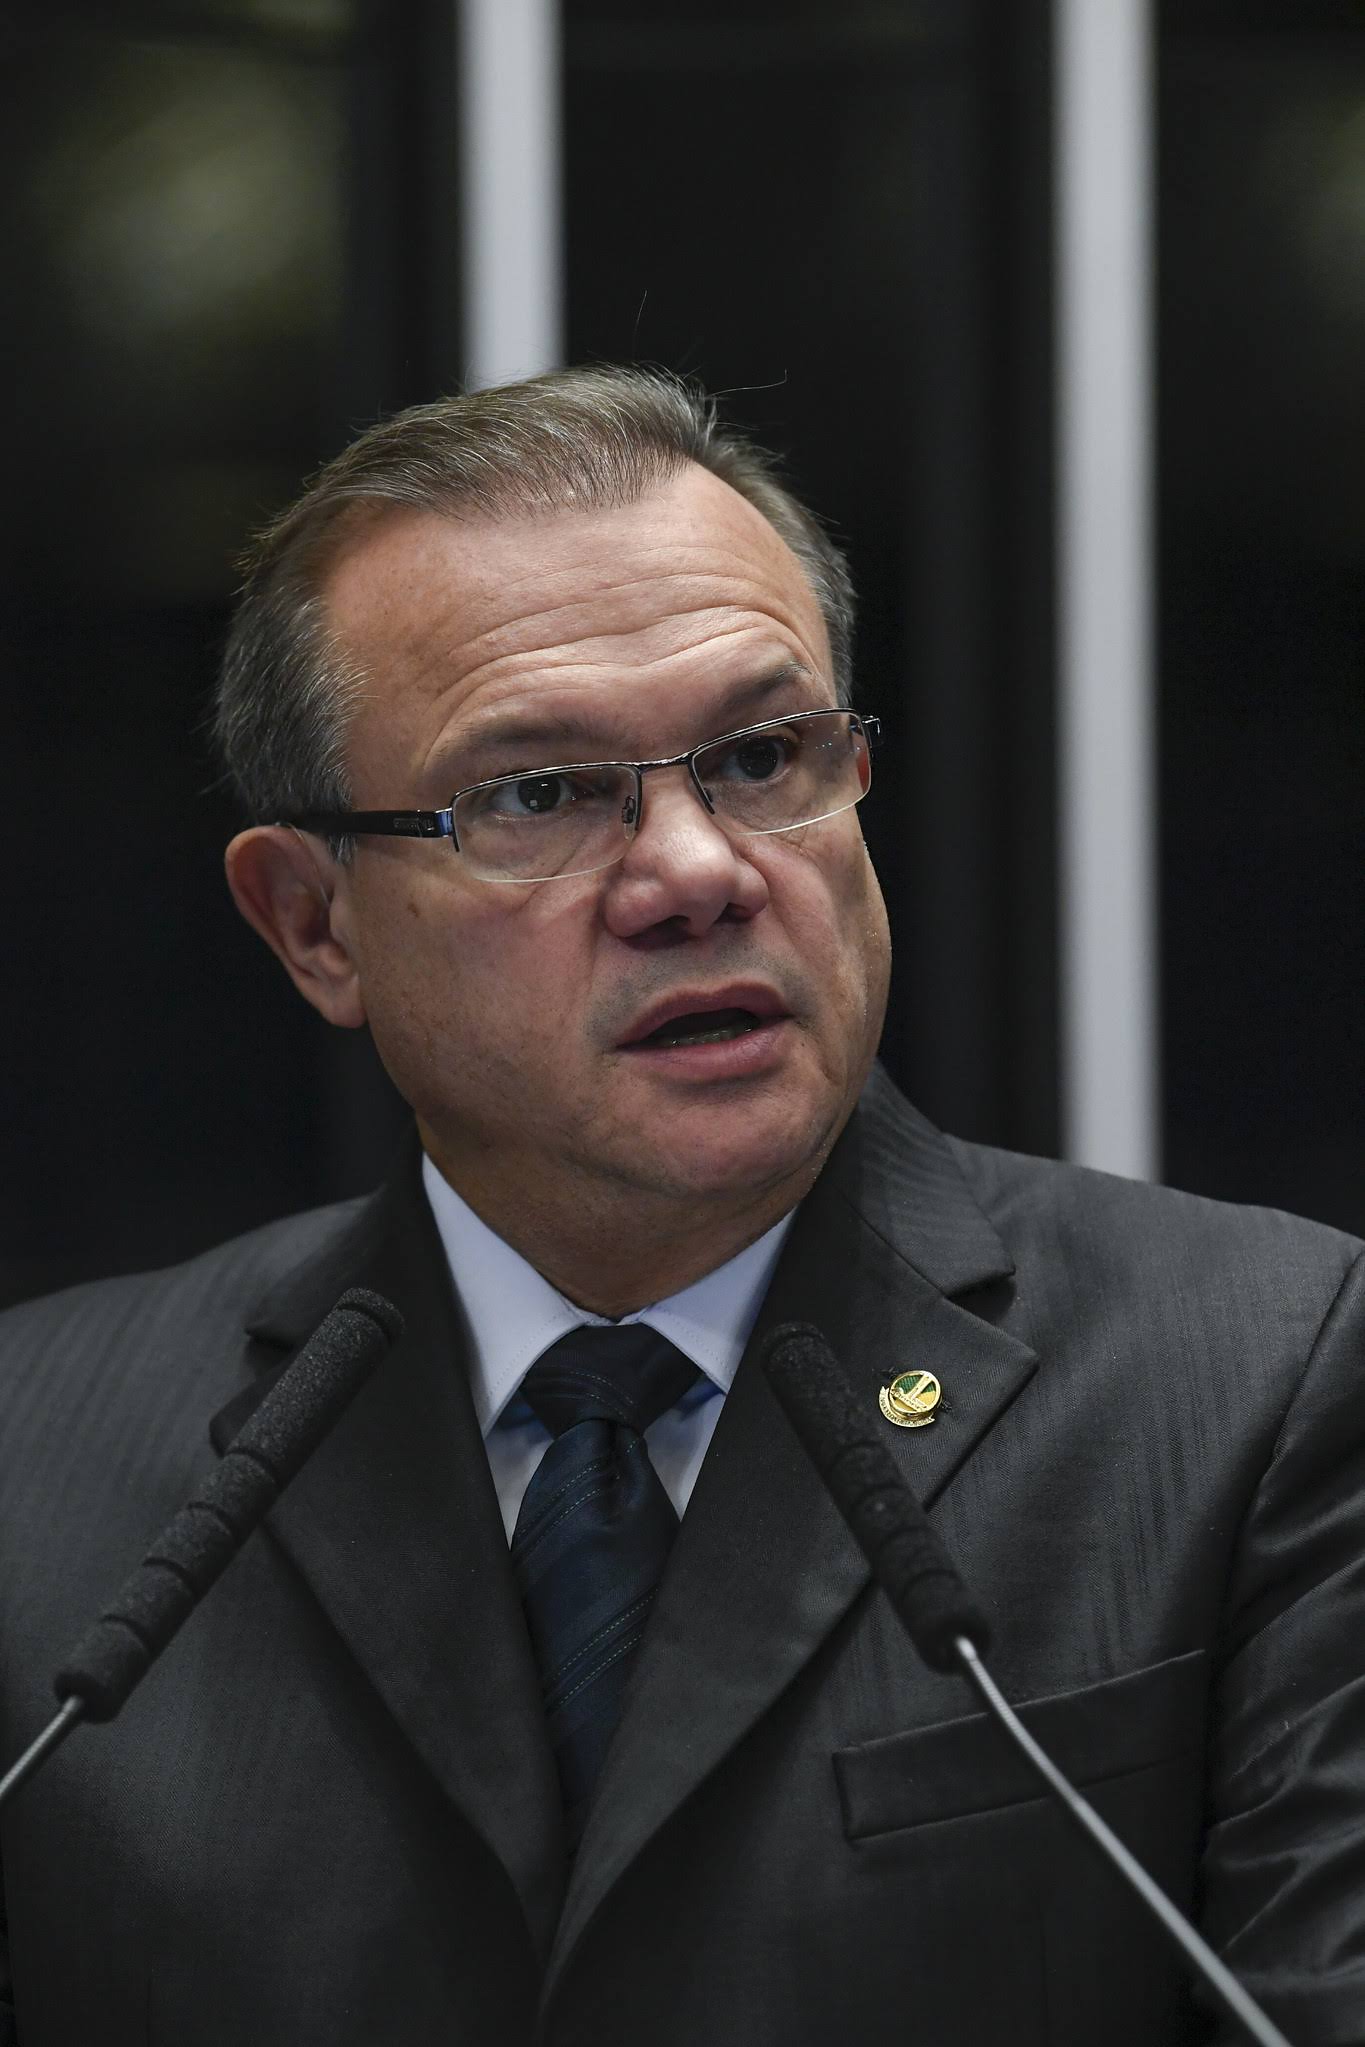 Brasil e as concessões mal administradas